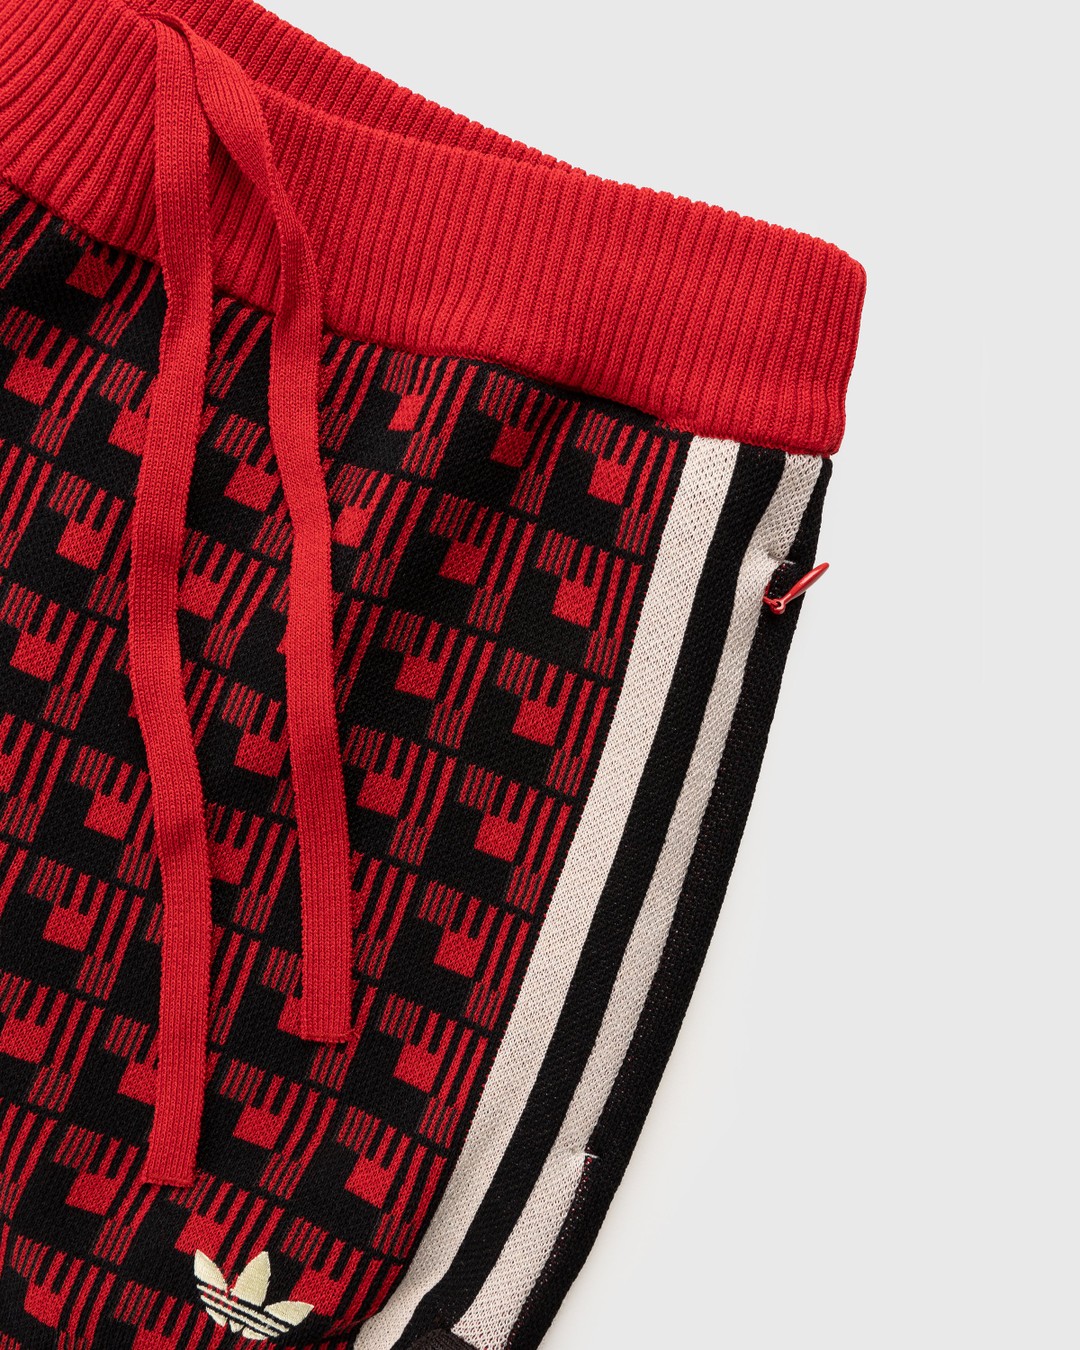 Adidas x Wales Bonner – WB Knit Shorts Scarlet/Black - Shorts - Red - Image 5